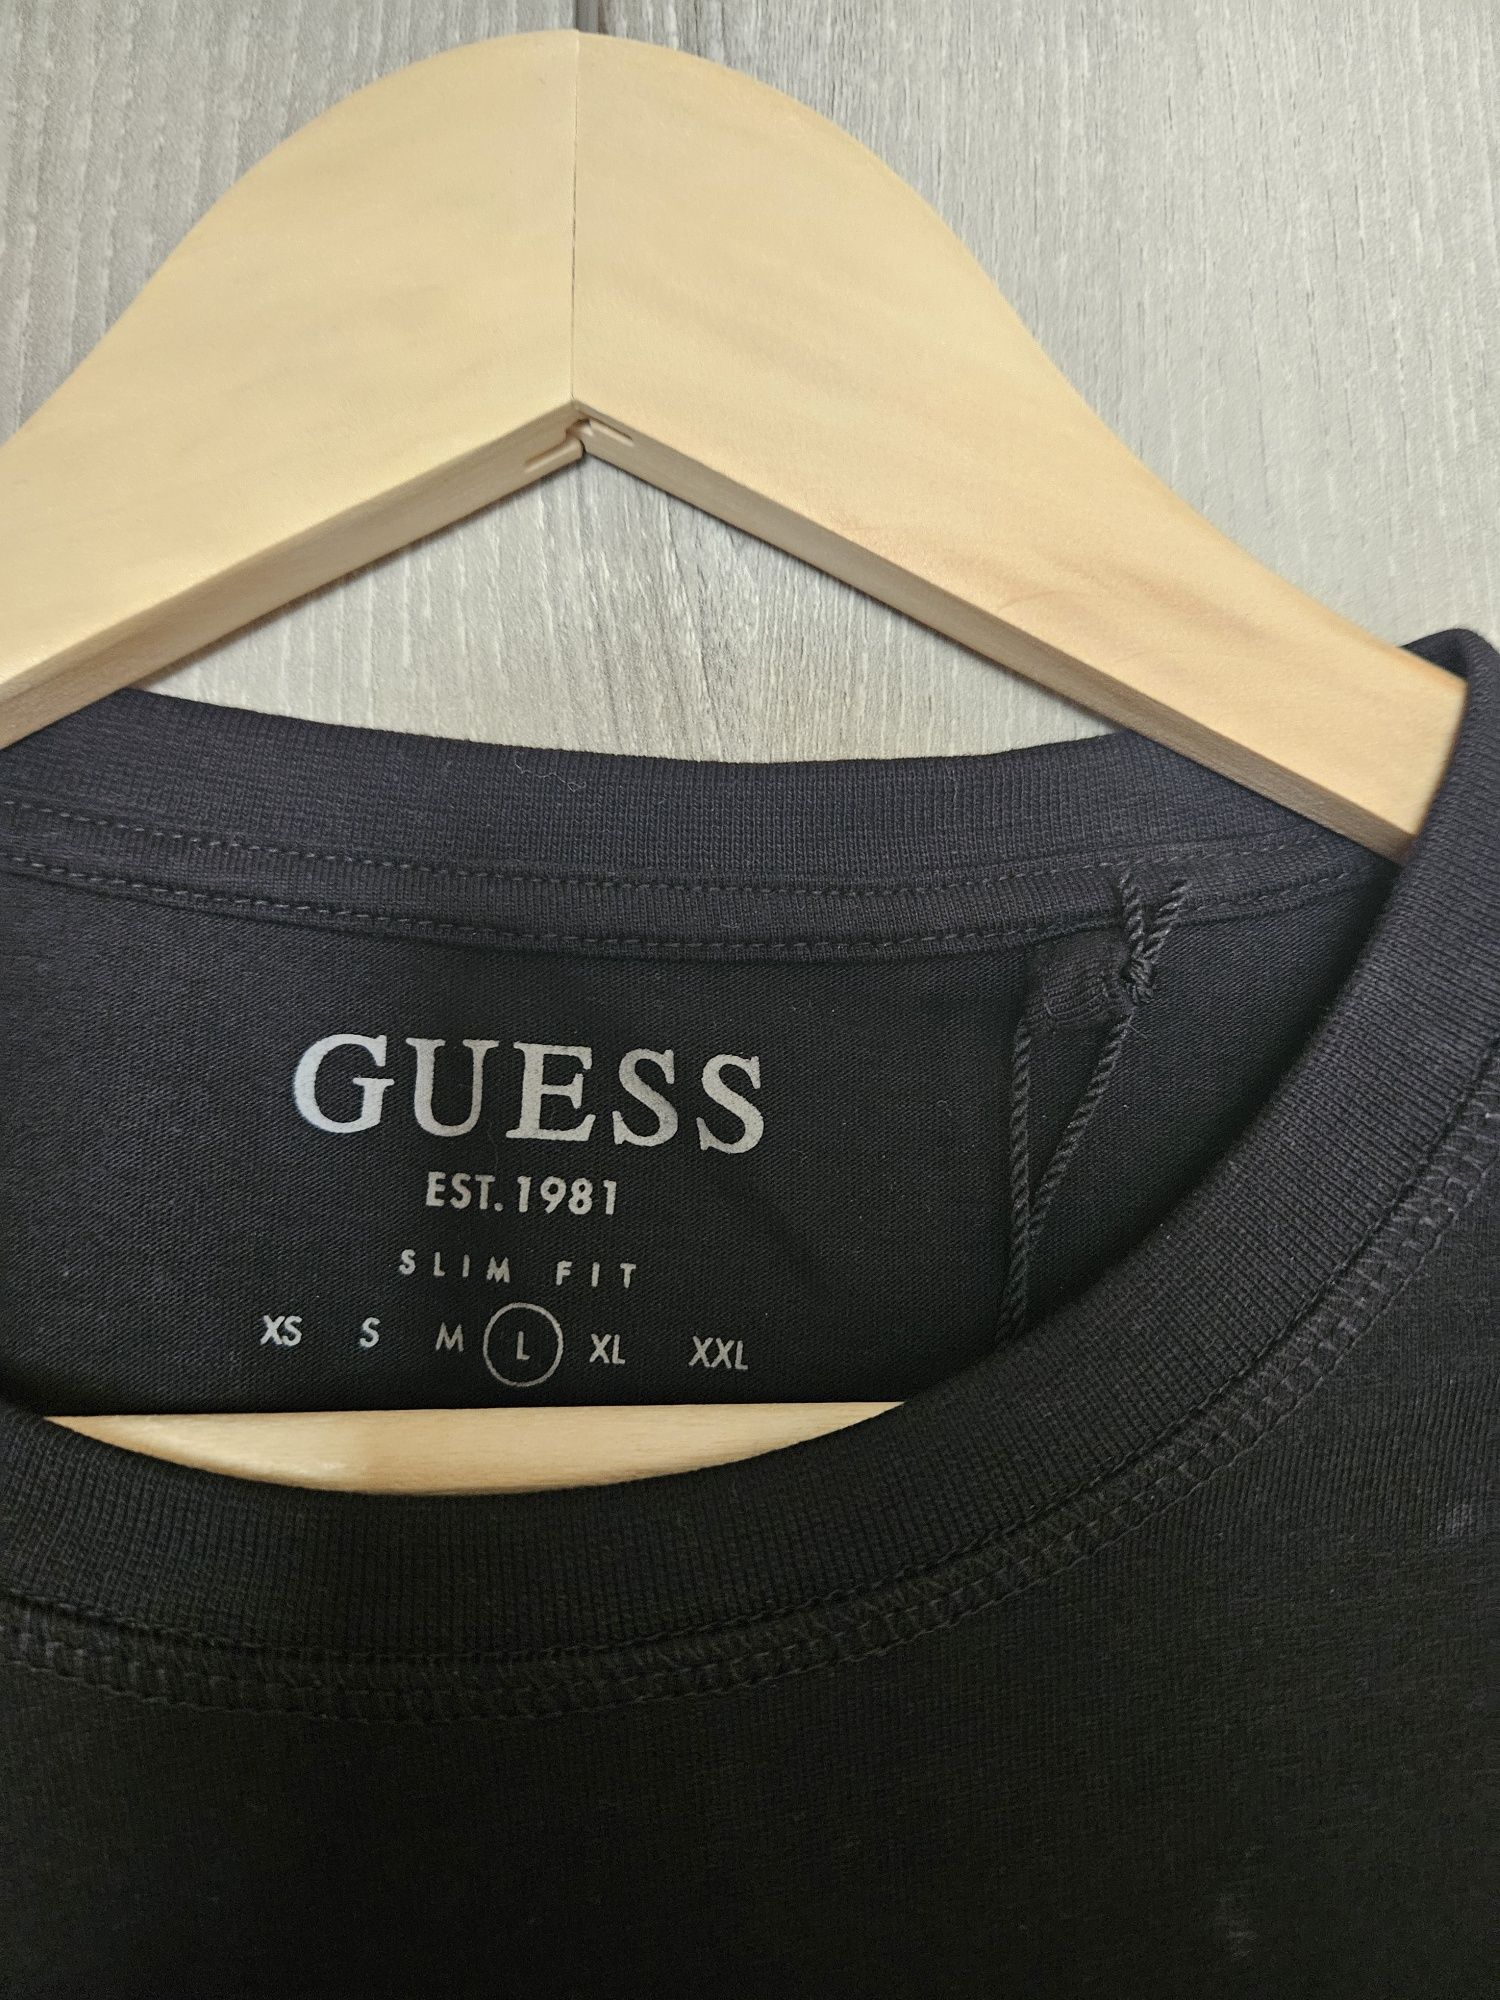 Мъжка тениска GUESS - Slim fit - размер L